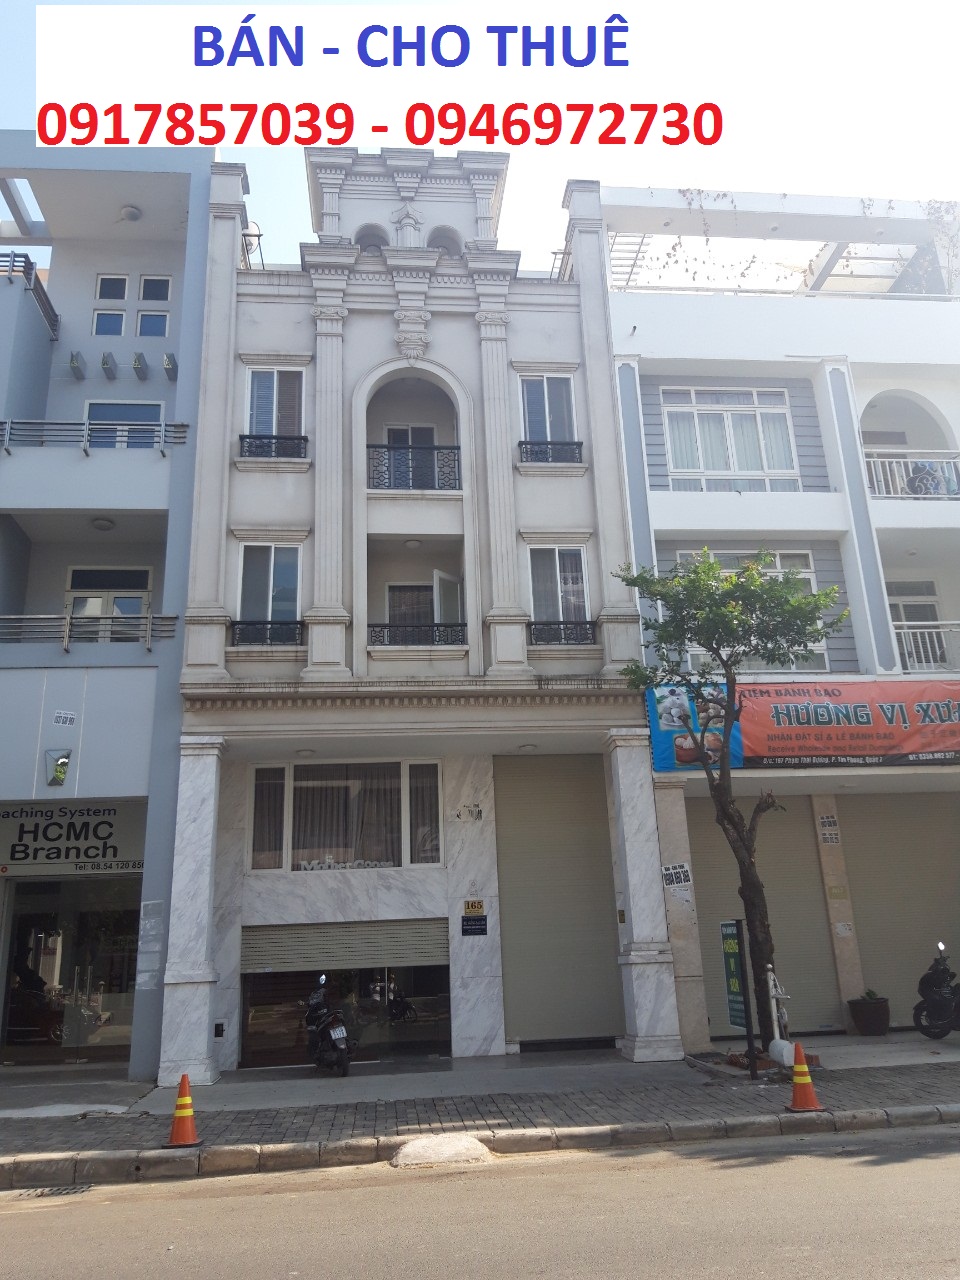 Cho thuê nhà phố mặt tiền Phan Khiêm Ích, khu Hưng Gia 1, gần trường học